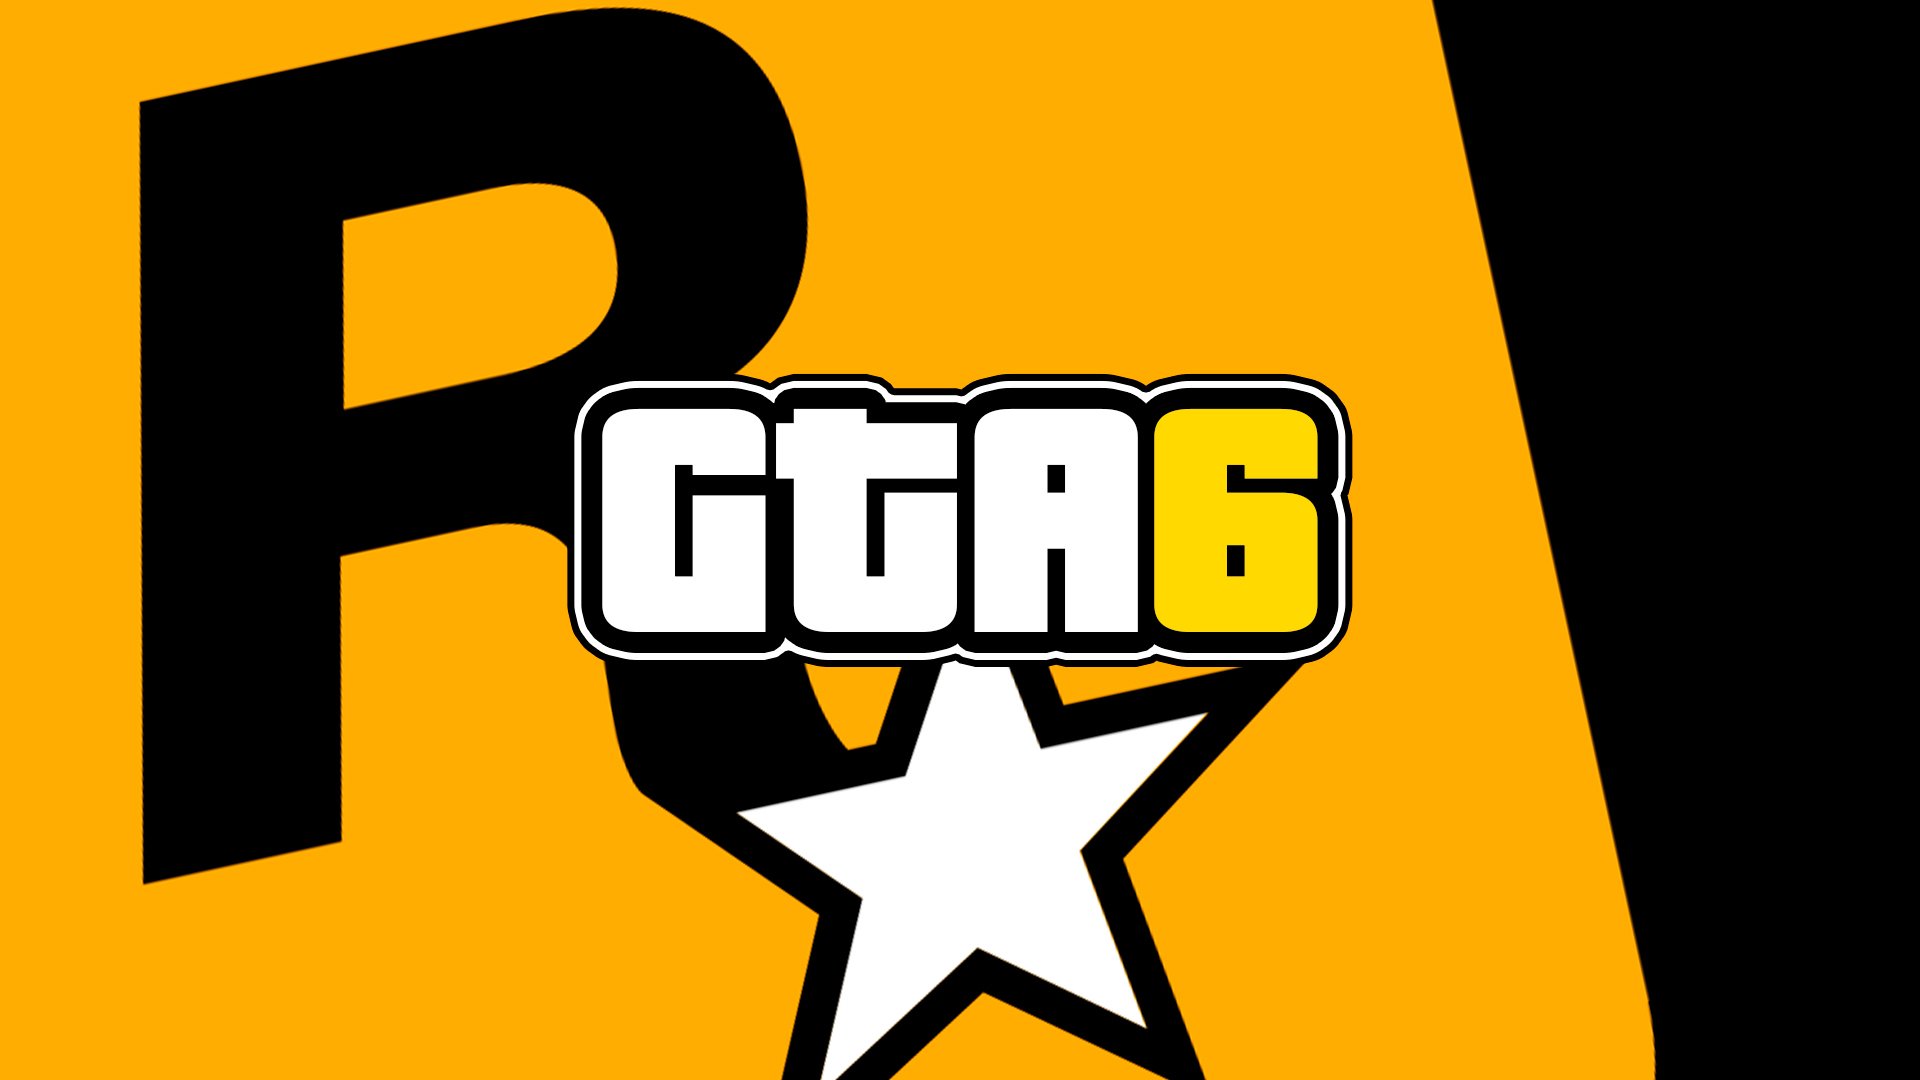 Sendo assim, a não ser que a produtora esteja fazendo algo completamente novo, temos a confirmação de GTA 6, como algo que já existe nos planos da Rockstar Games.